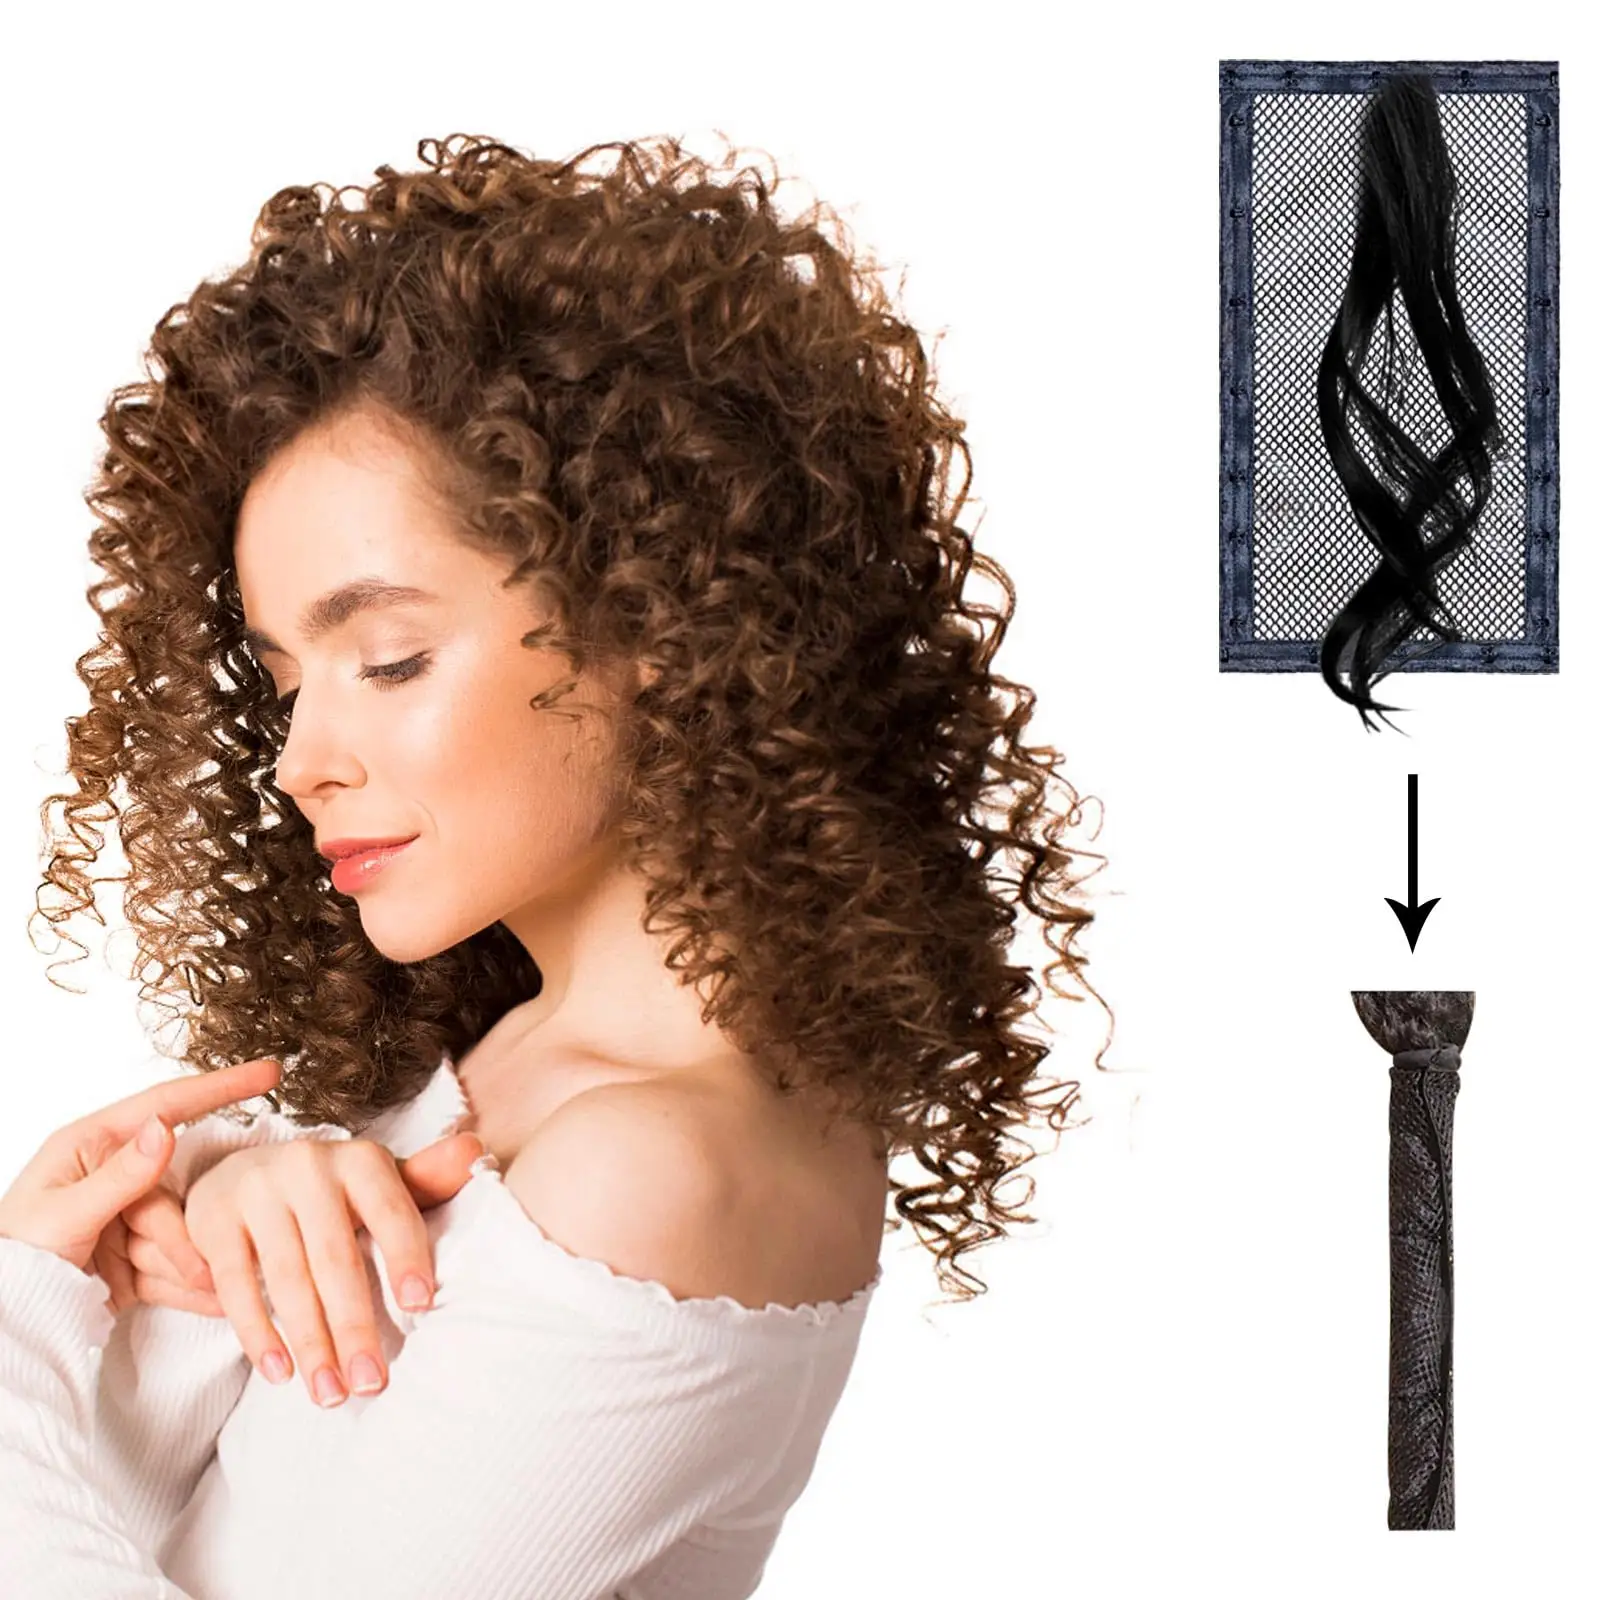 Ferramenta de alongamento de cabelo natural DIY portátil estilo ondulado comprimento ajustável mais longo para evitar encolhimento cabelo cacheado